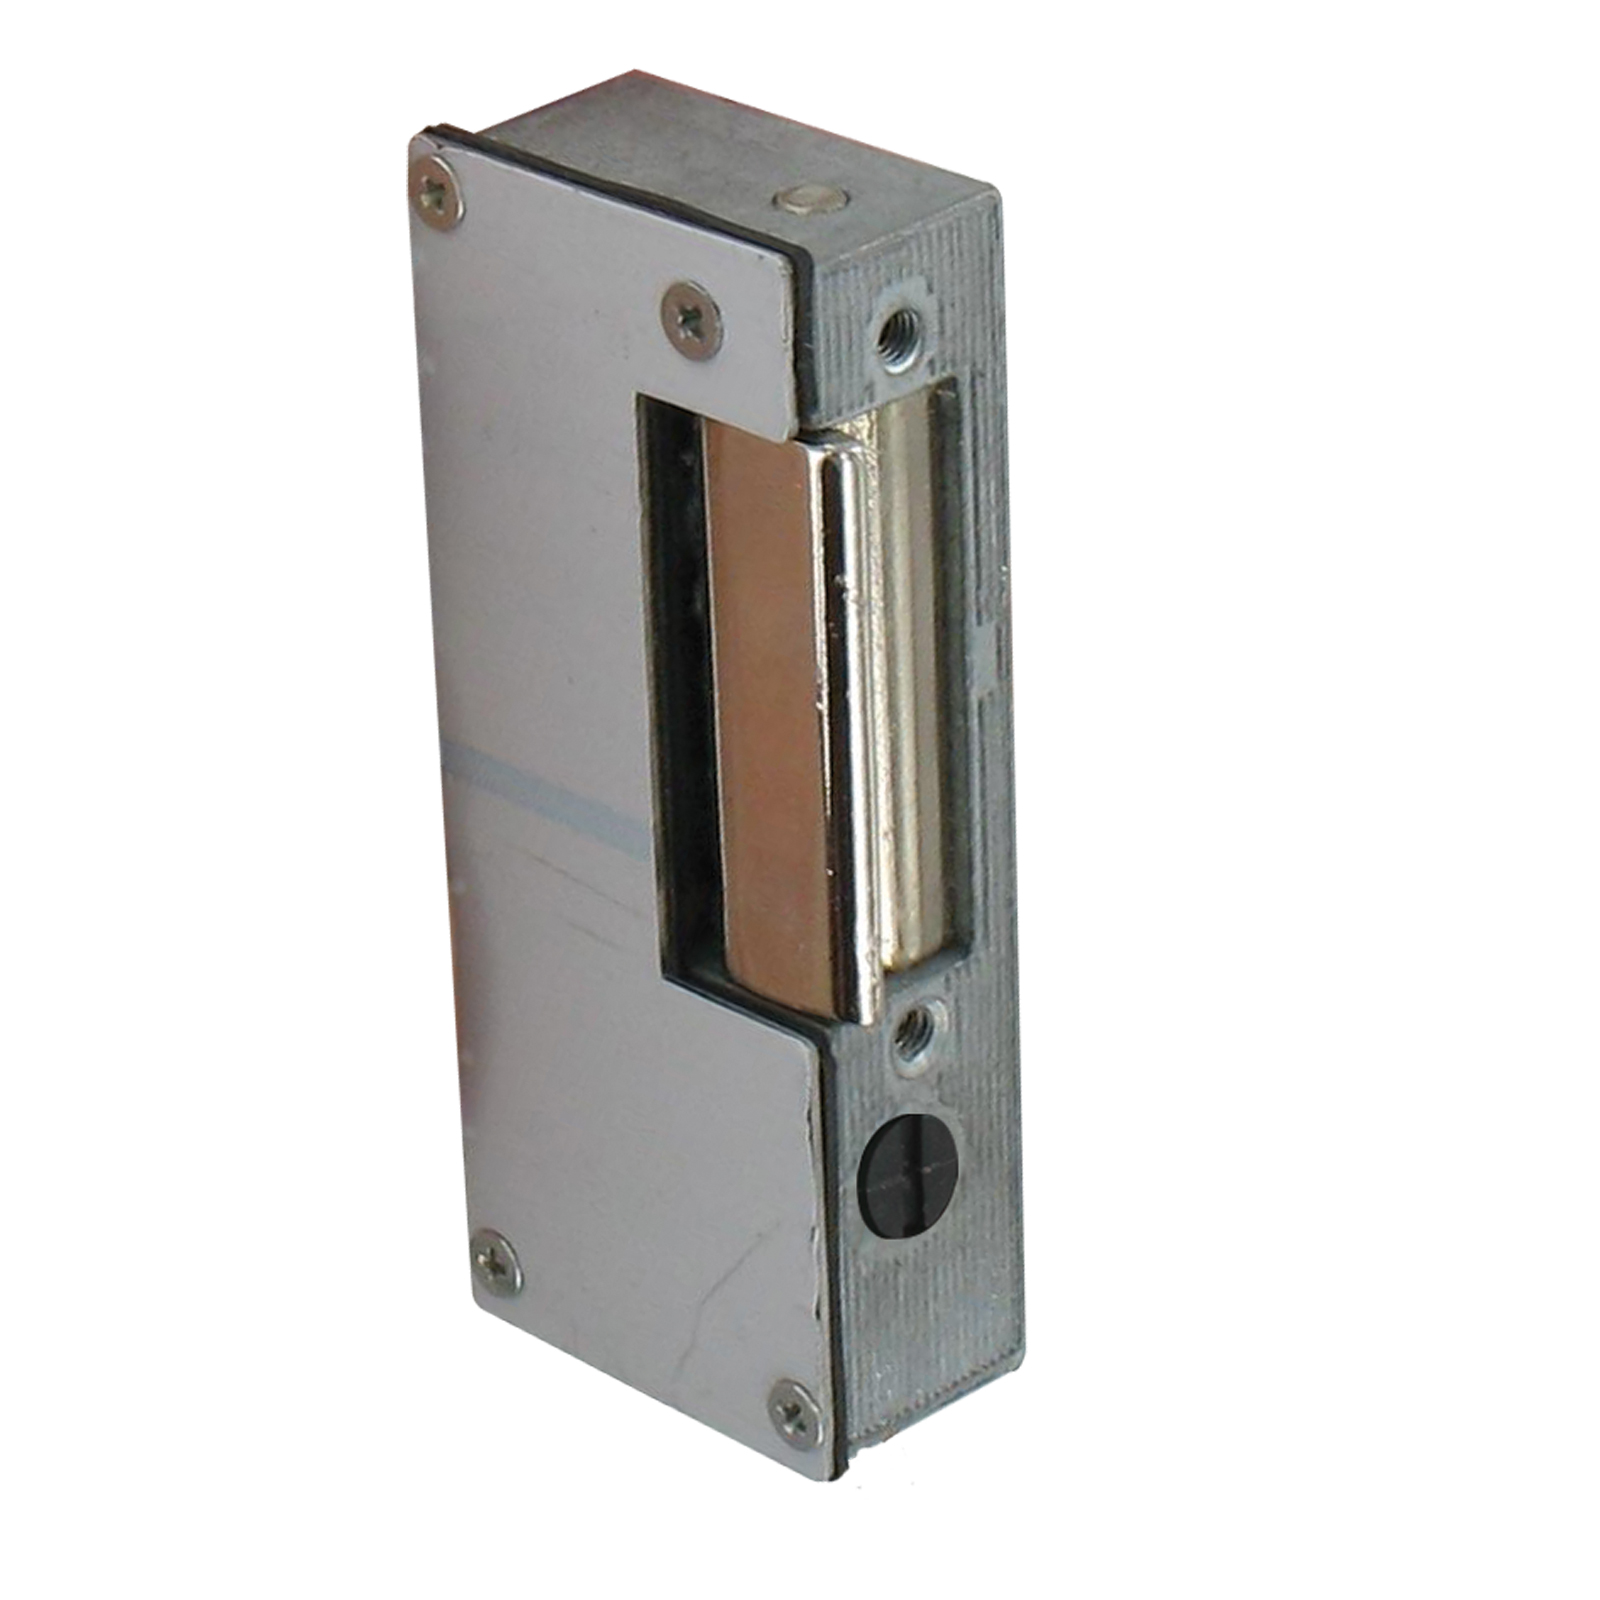 BONN340-040-EI Frilec Réfrigérateur pose-libre à 1 porte - Elektro